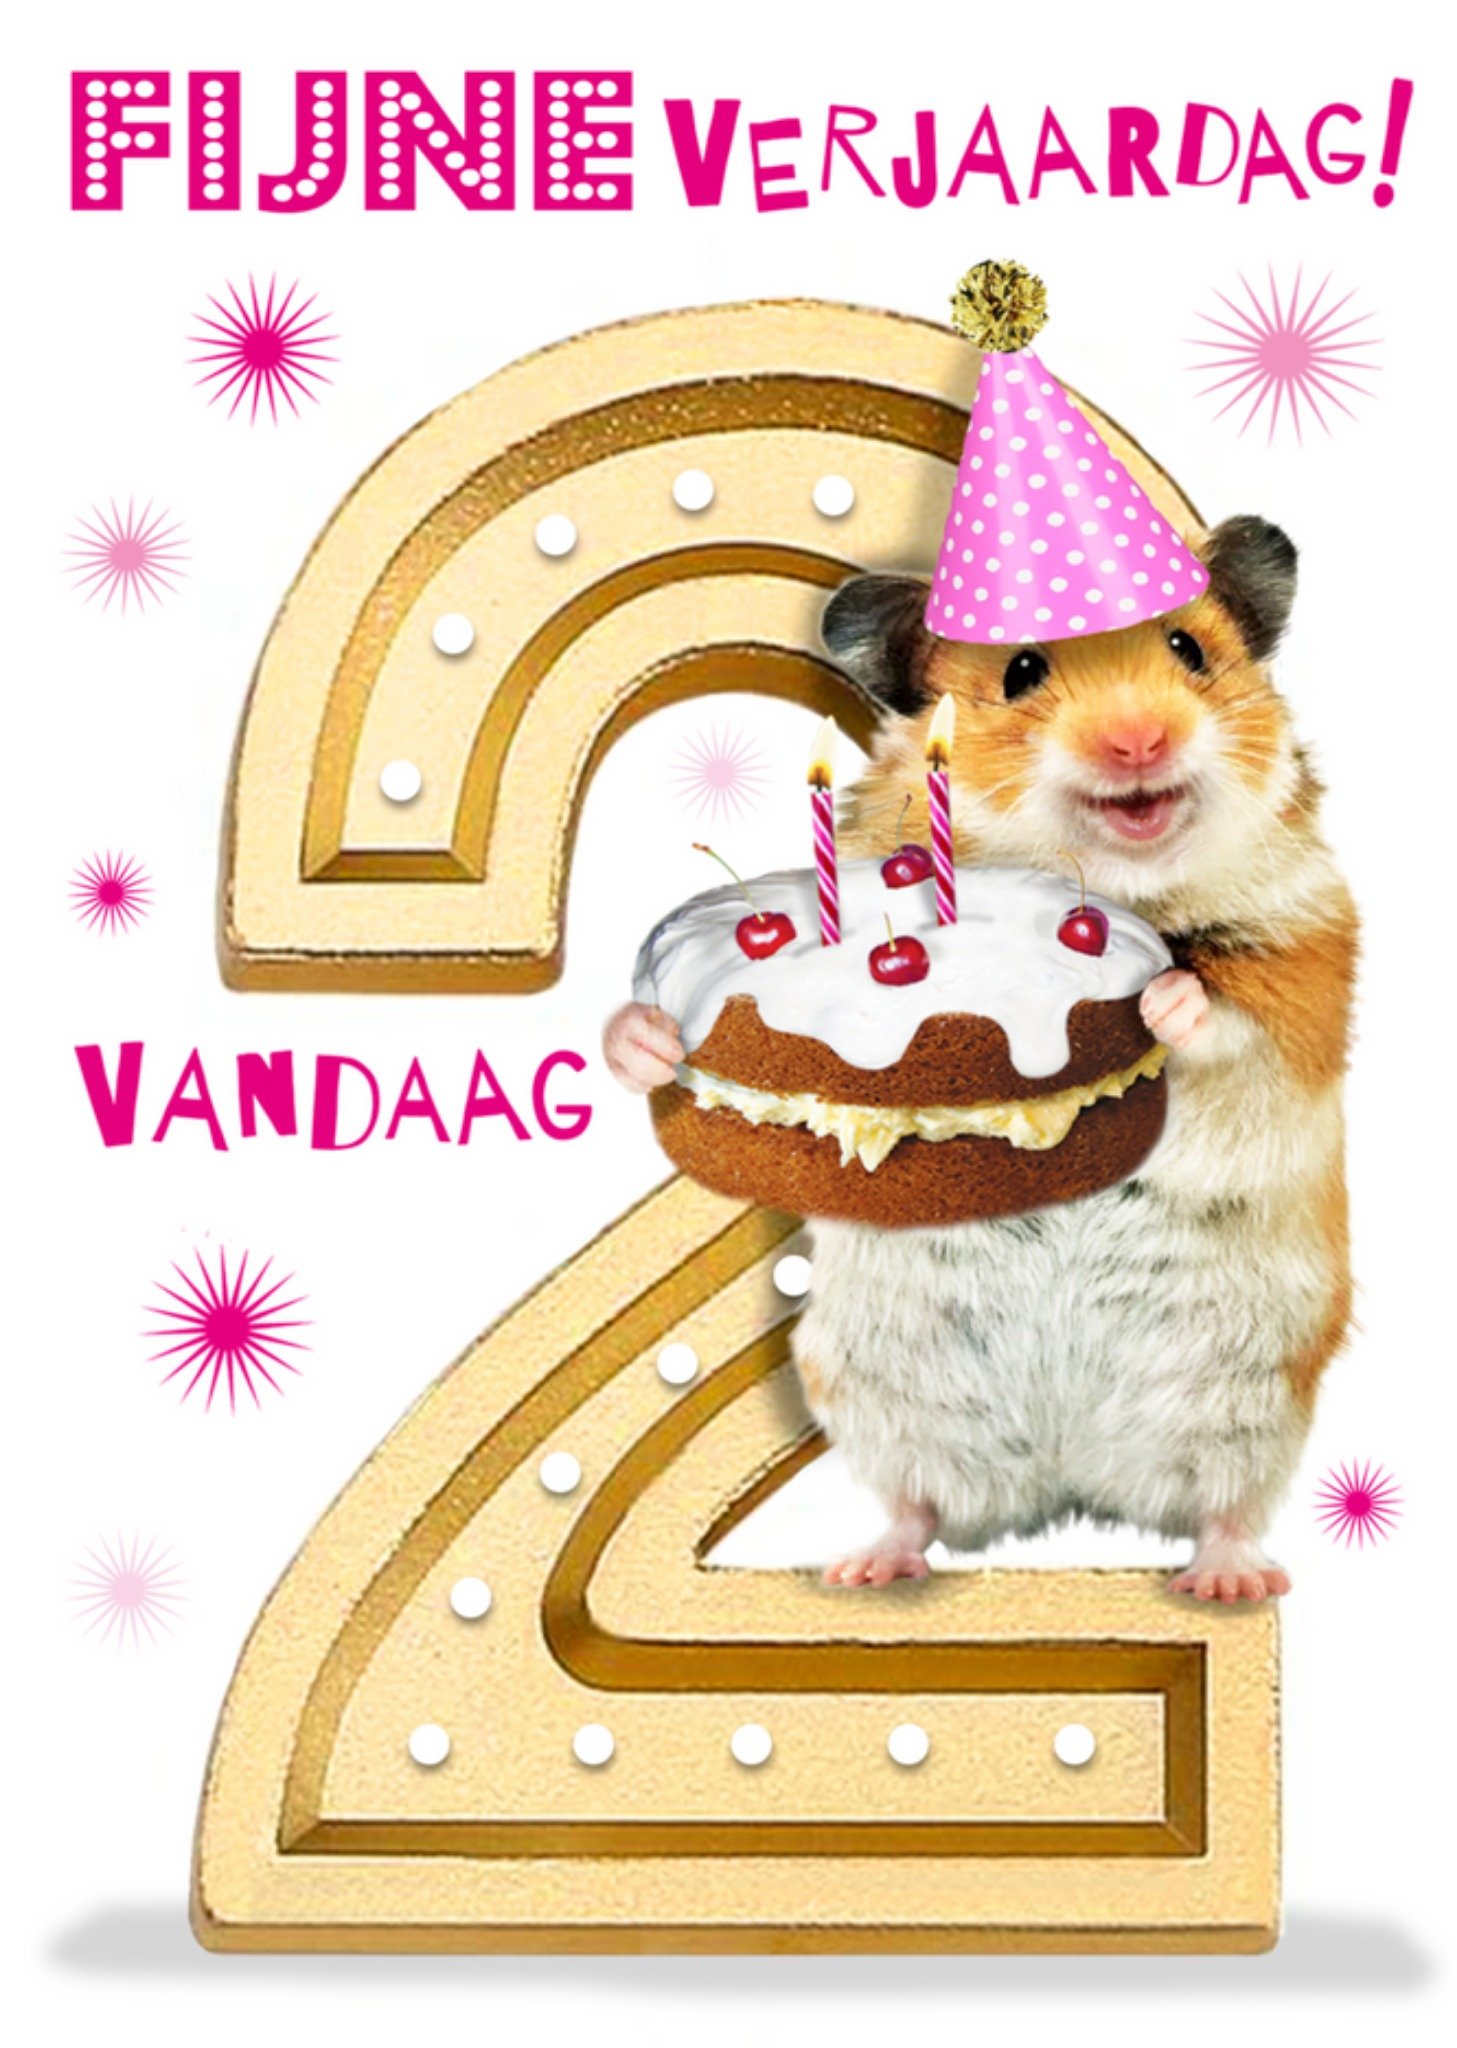 Emma Proctor - Verjaardagskaart - hamster